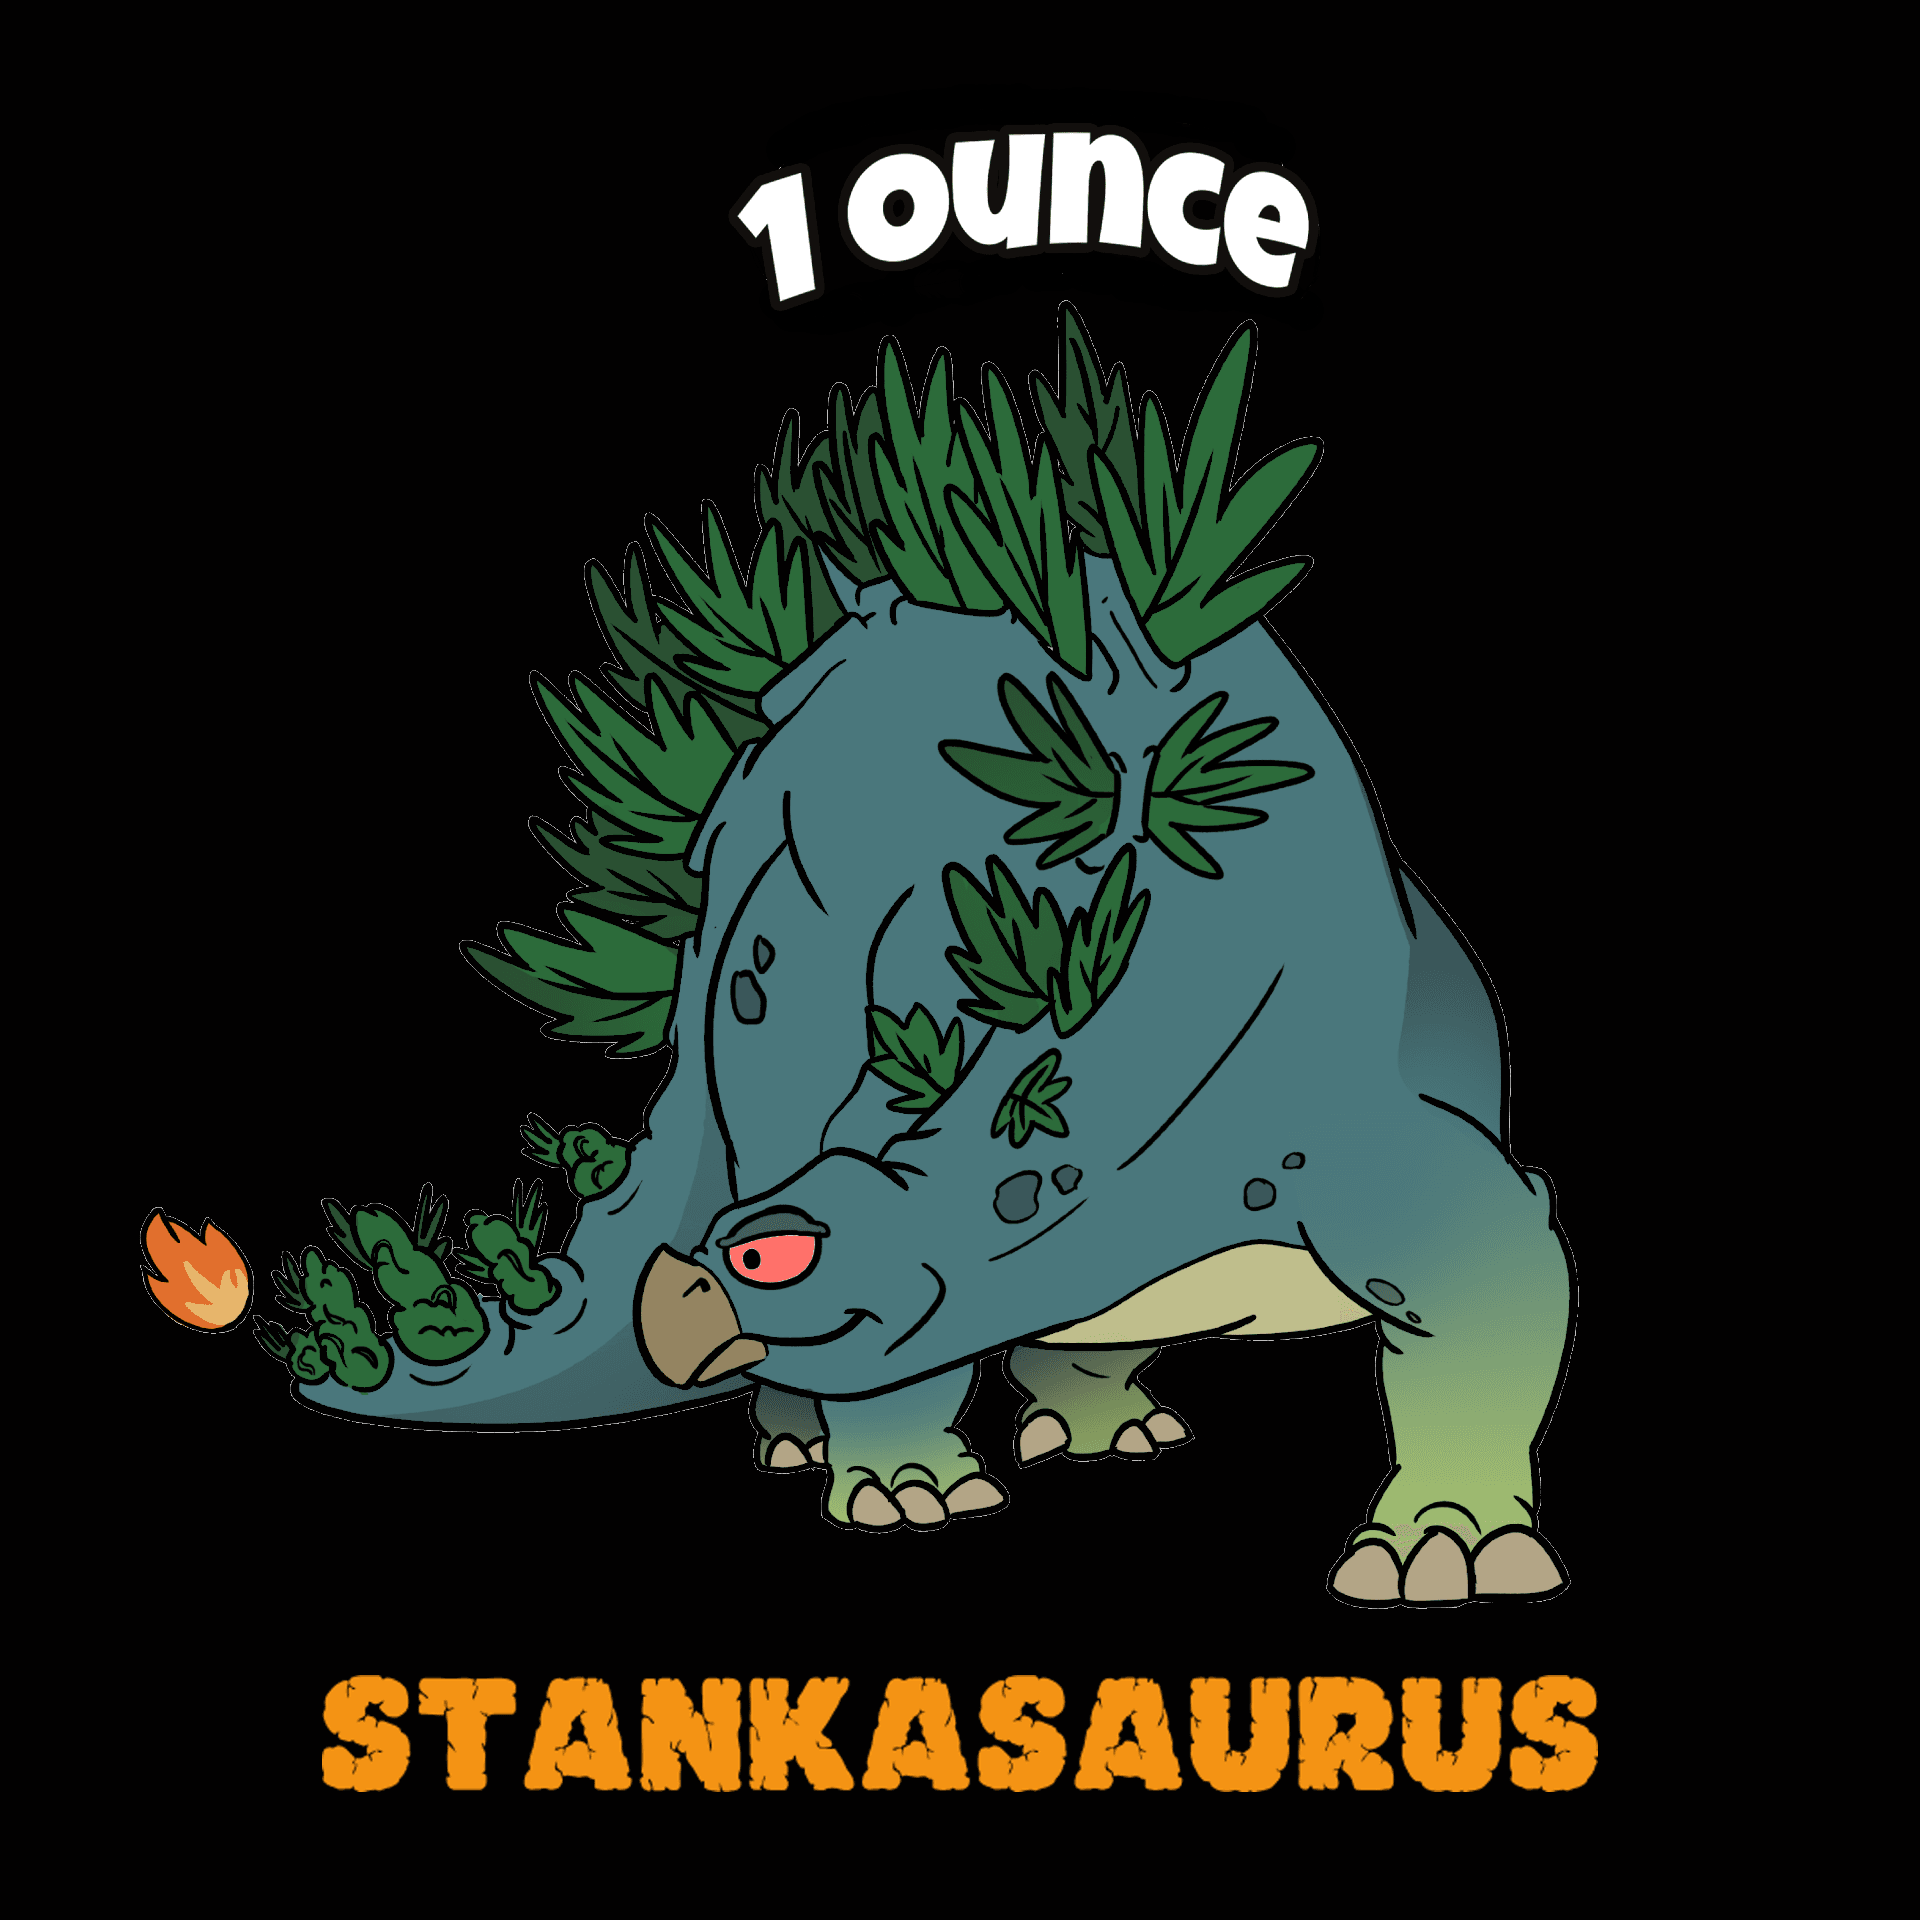 Stankasaurus 1 Ounce